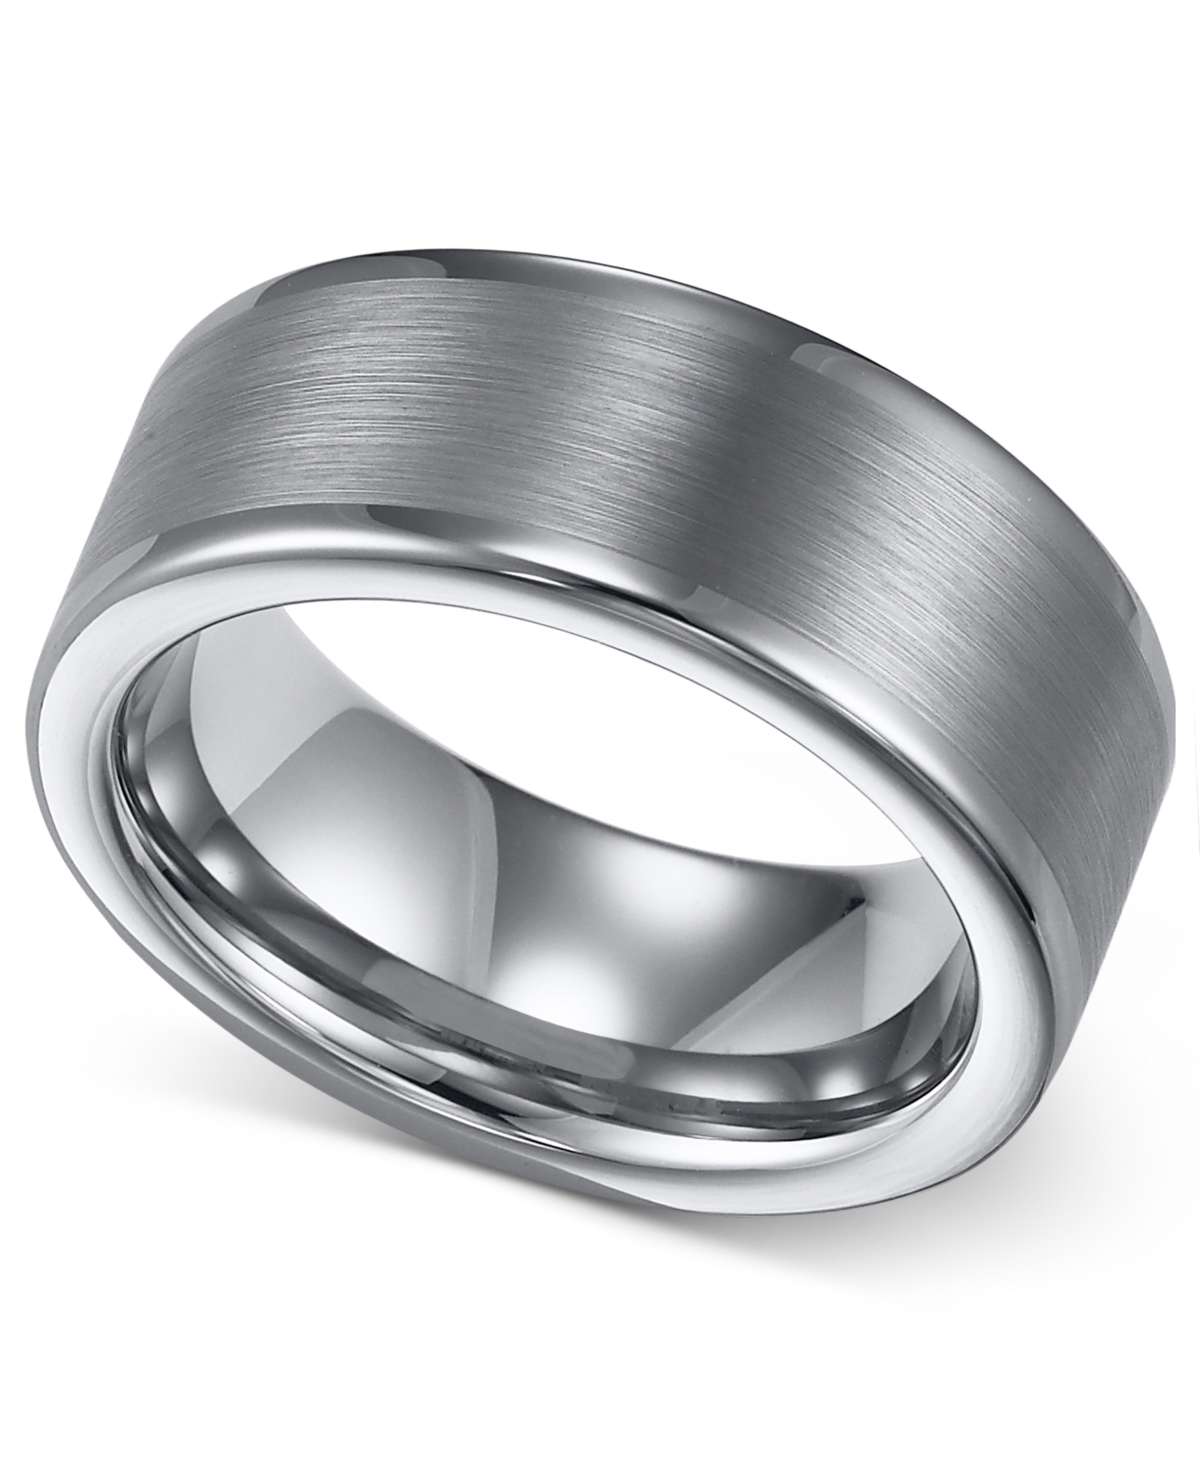 Men's Tungsten Ring, 8mm Wedding Band - Tungsten